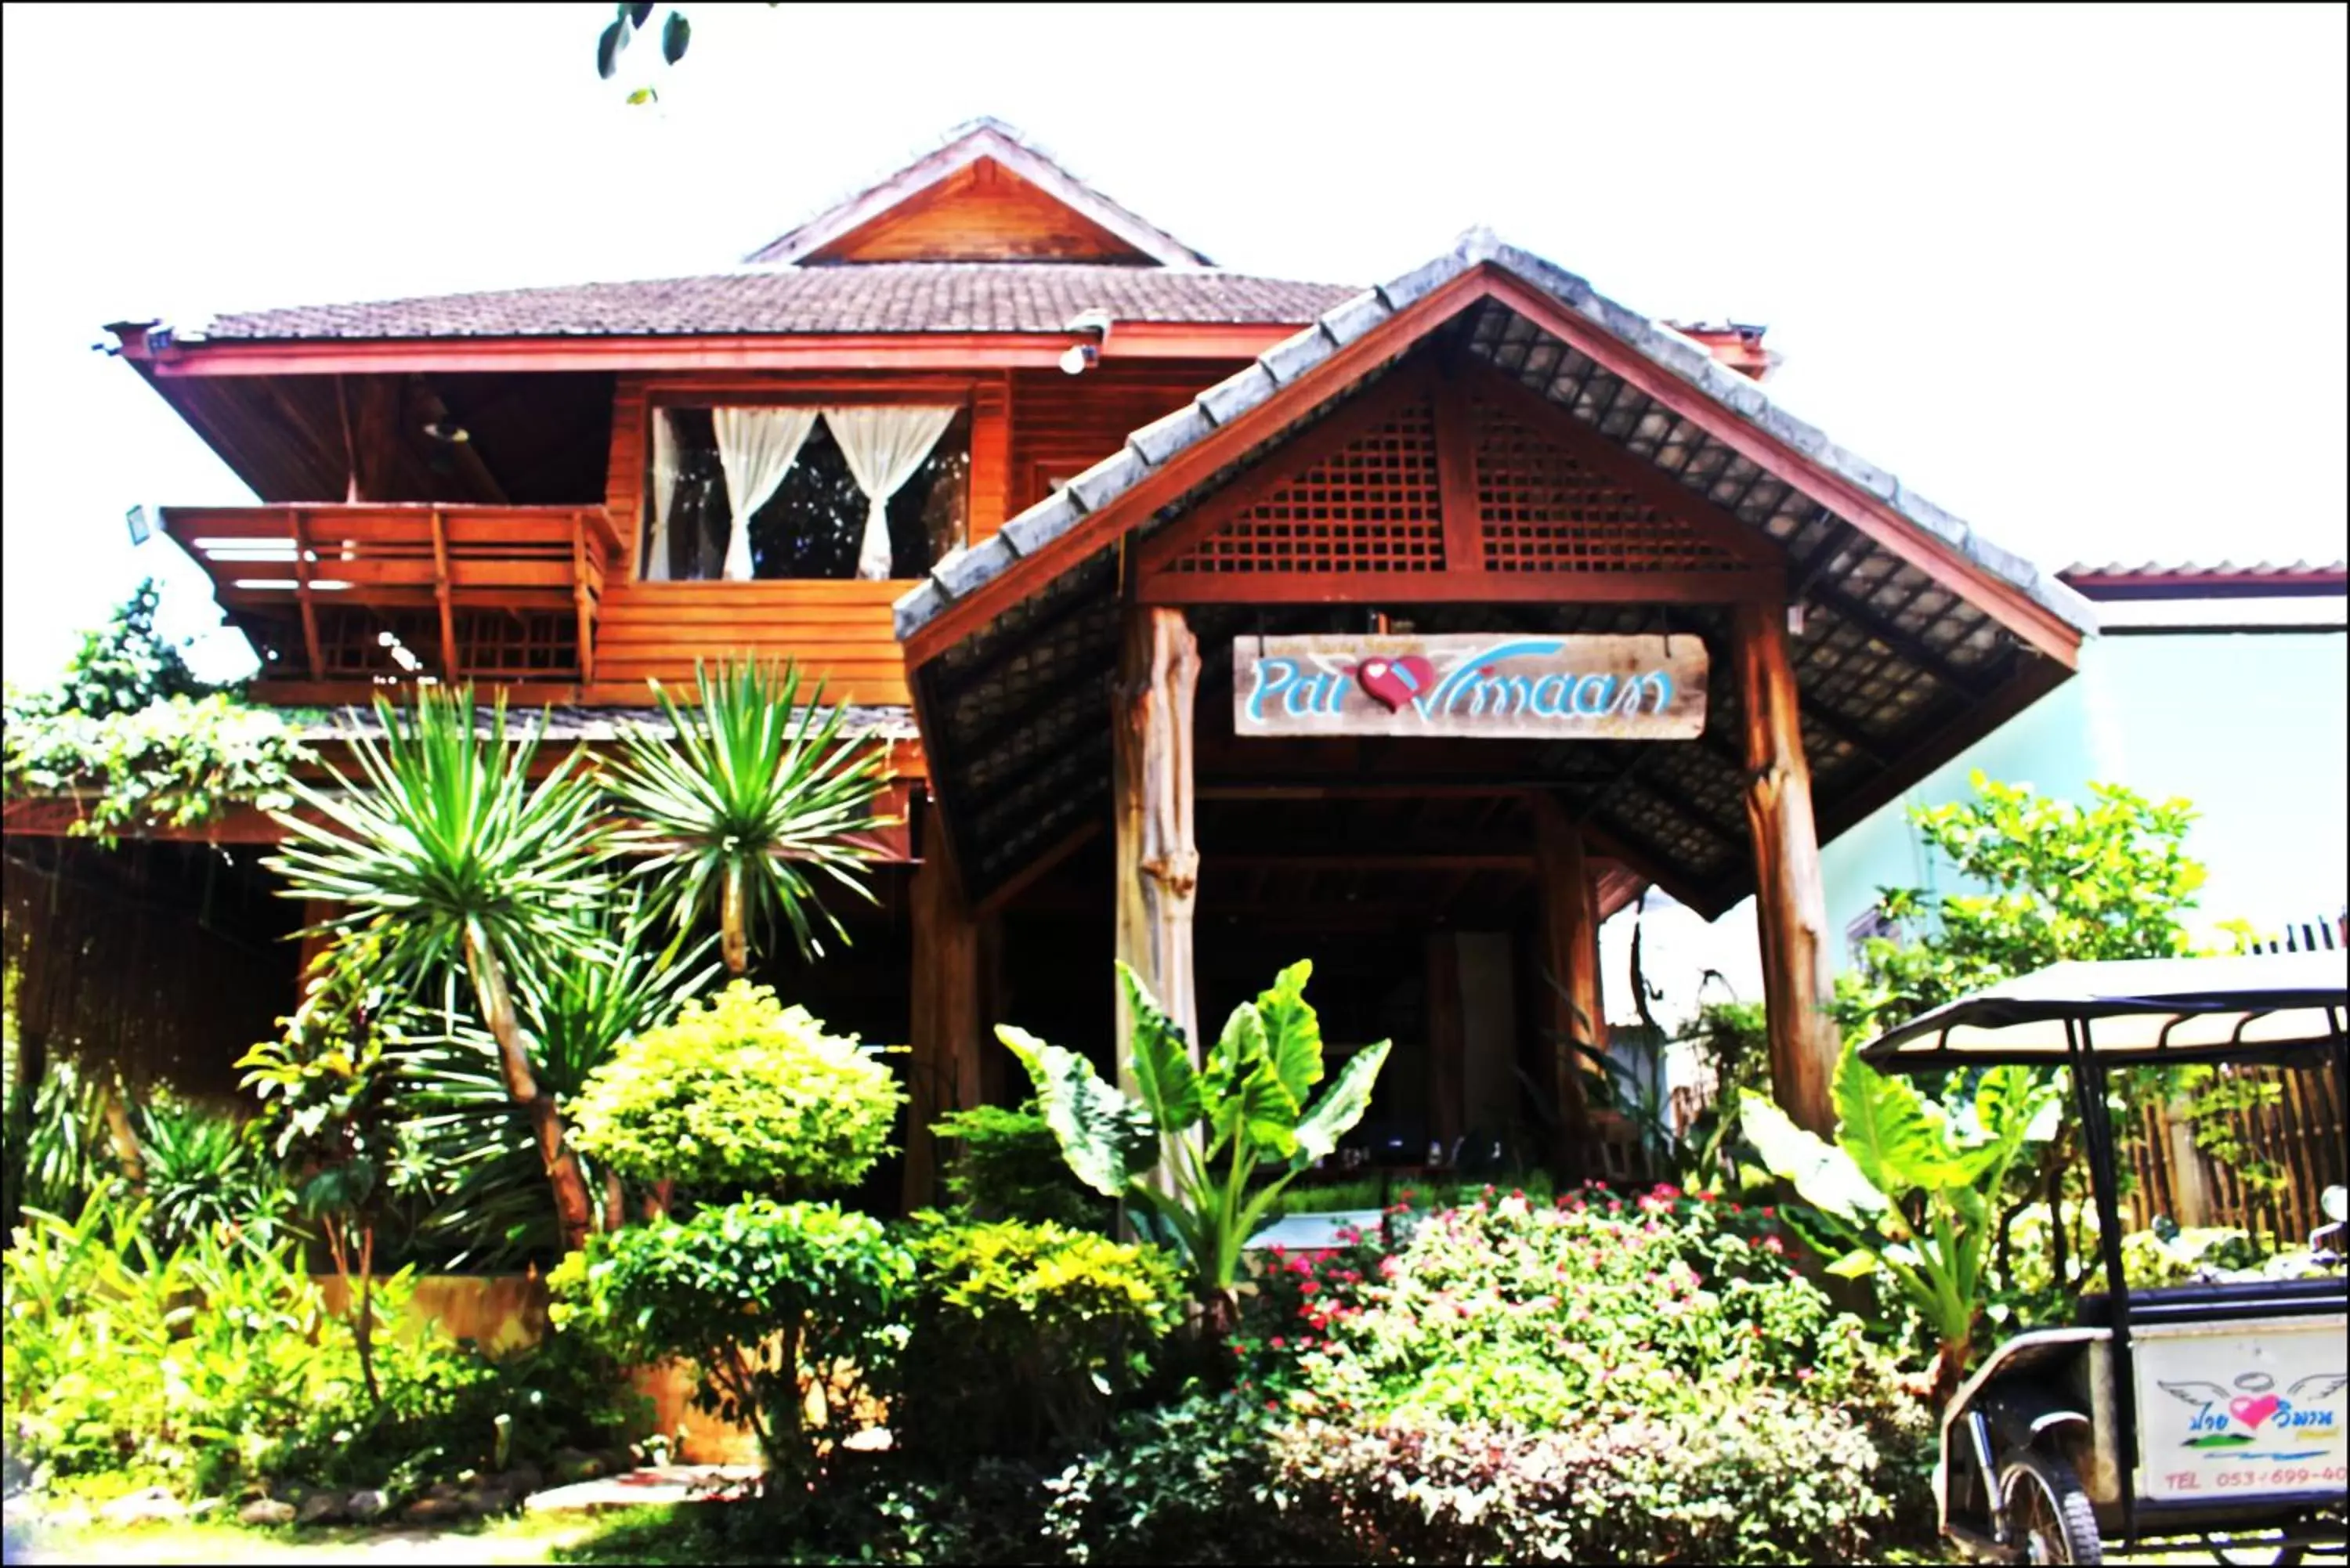 Bird's eye view, Property Building in Pai Vimaan Resort